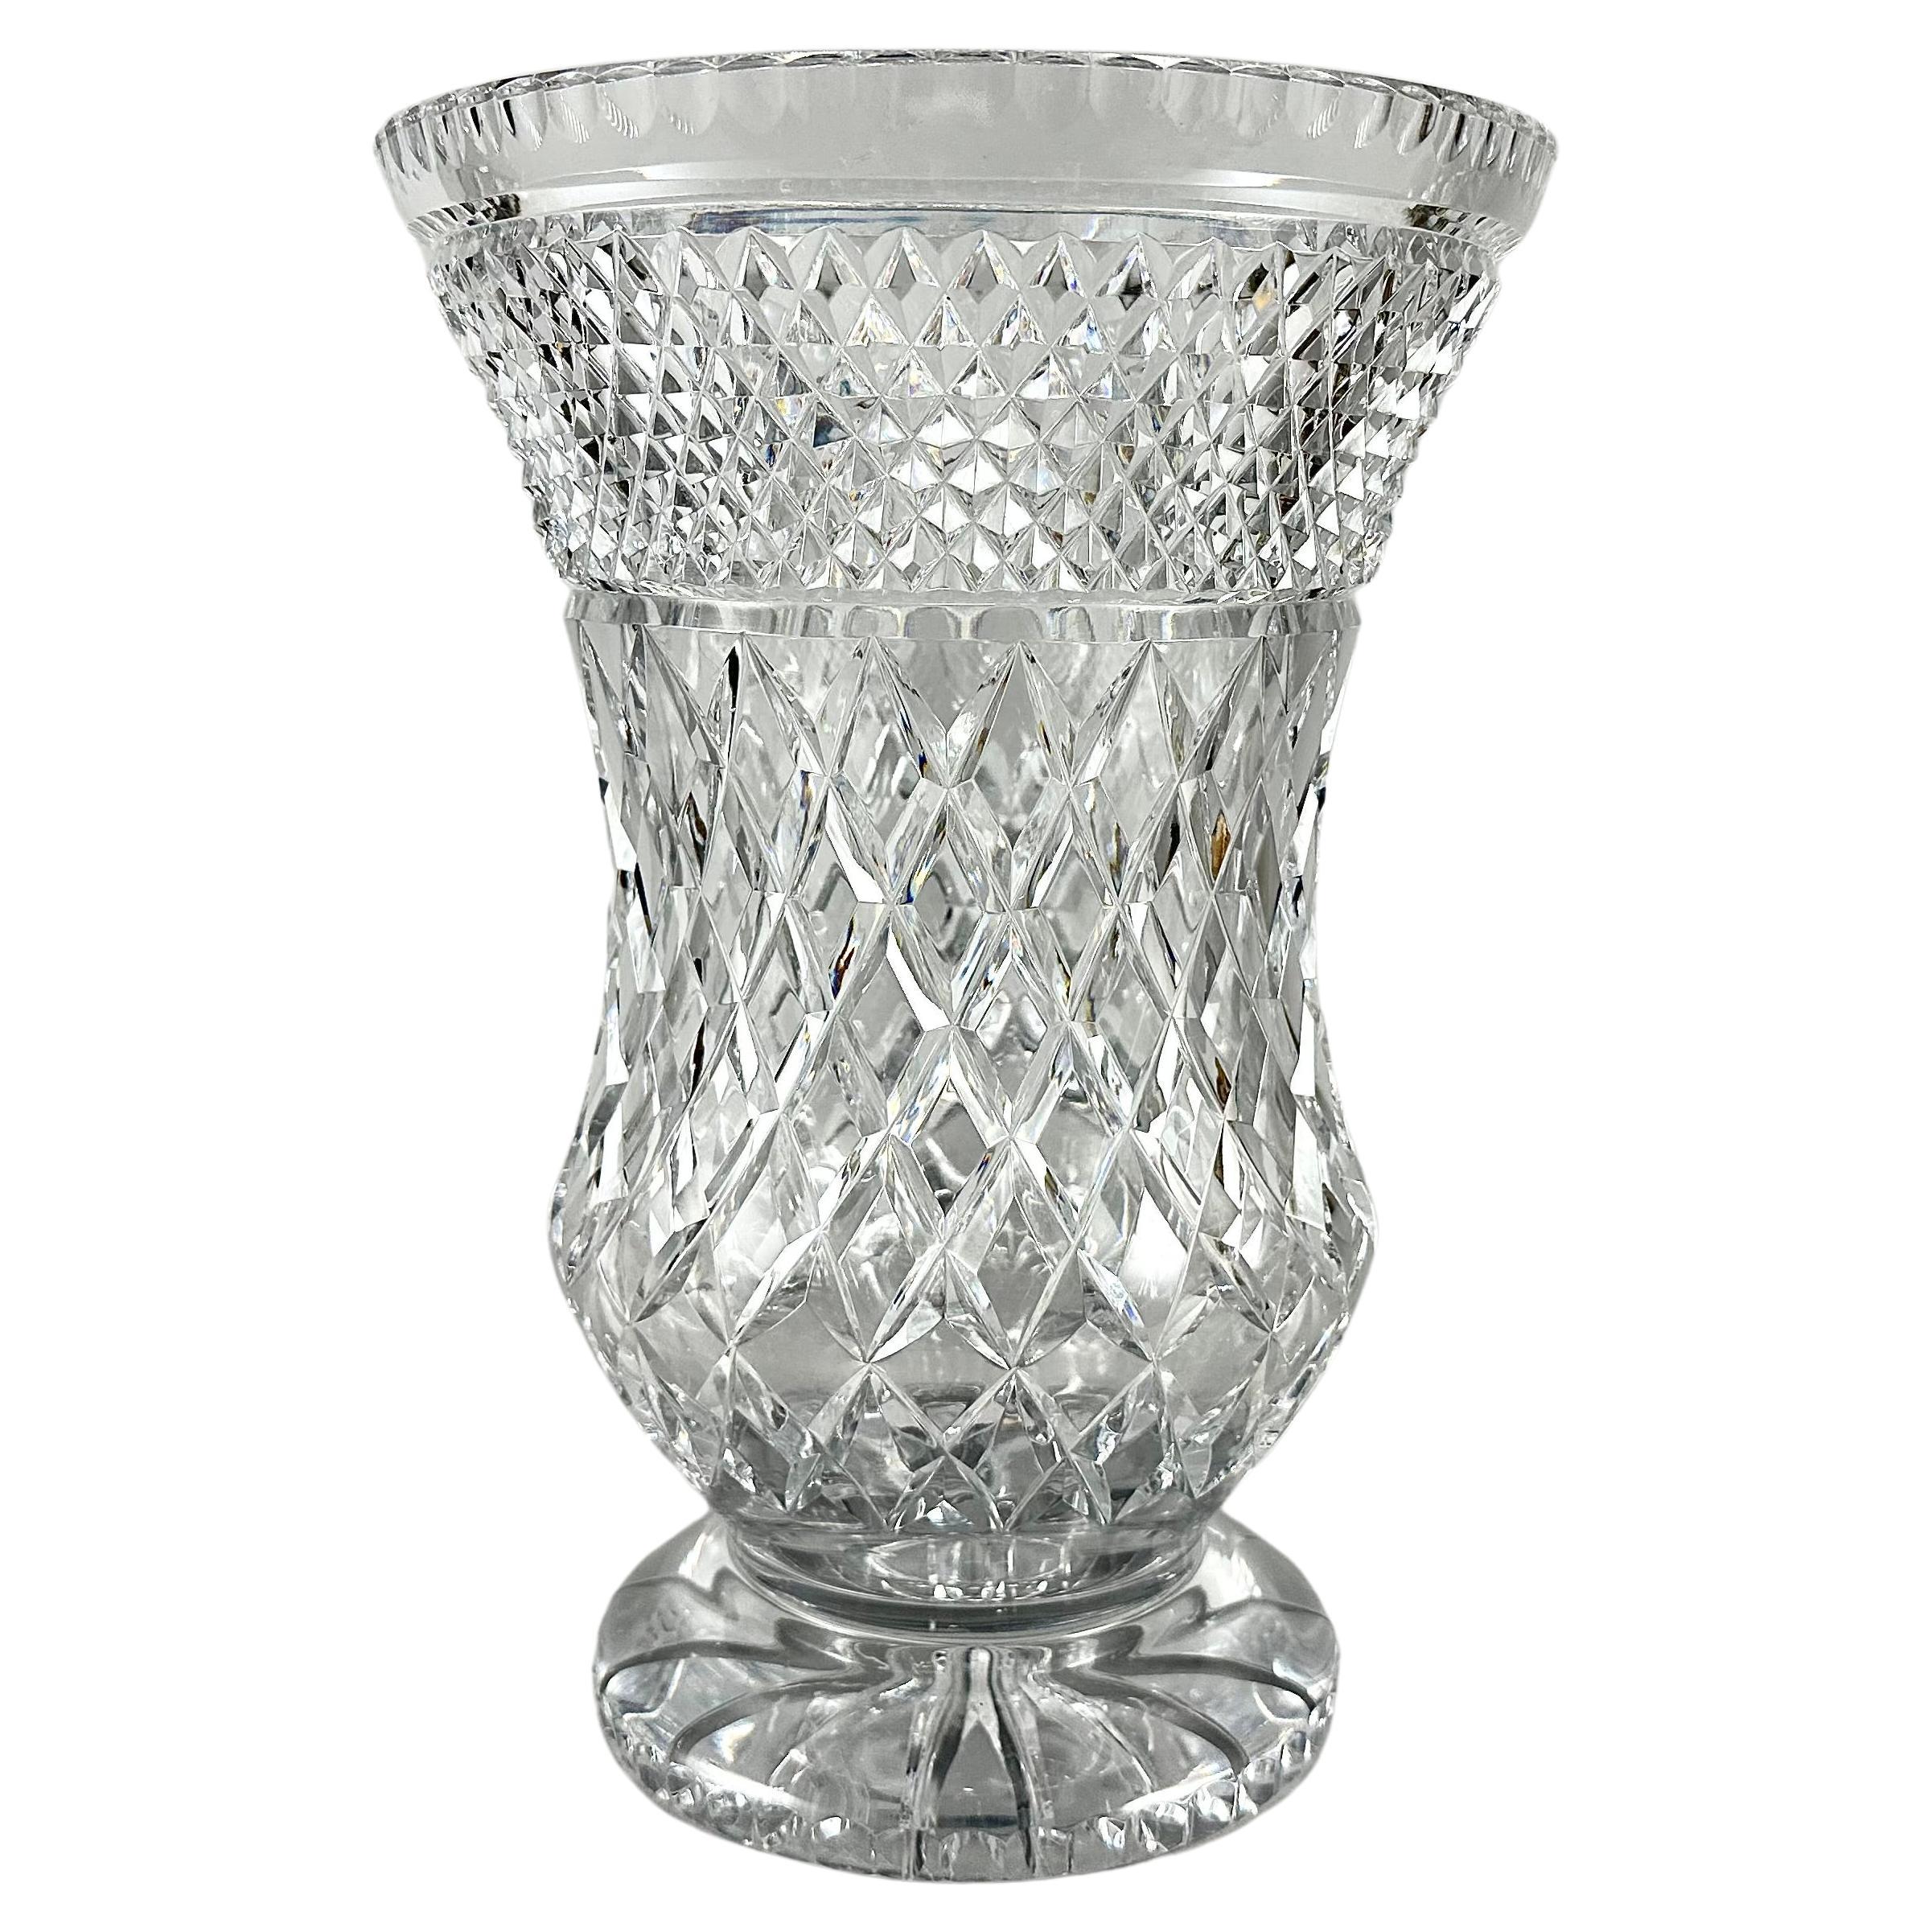 Vase Large Crystal Decorative Vase Made Of Cut Crystal Vintage France 1950s For Sale